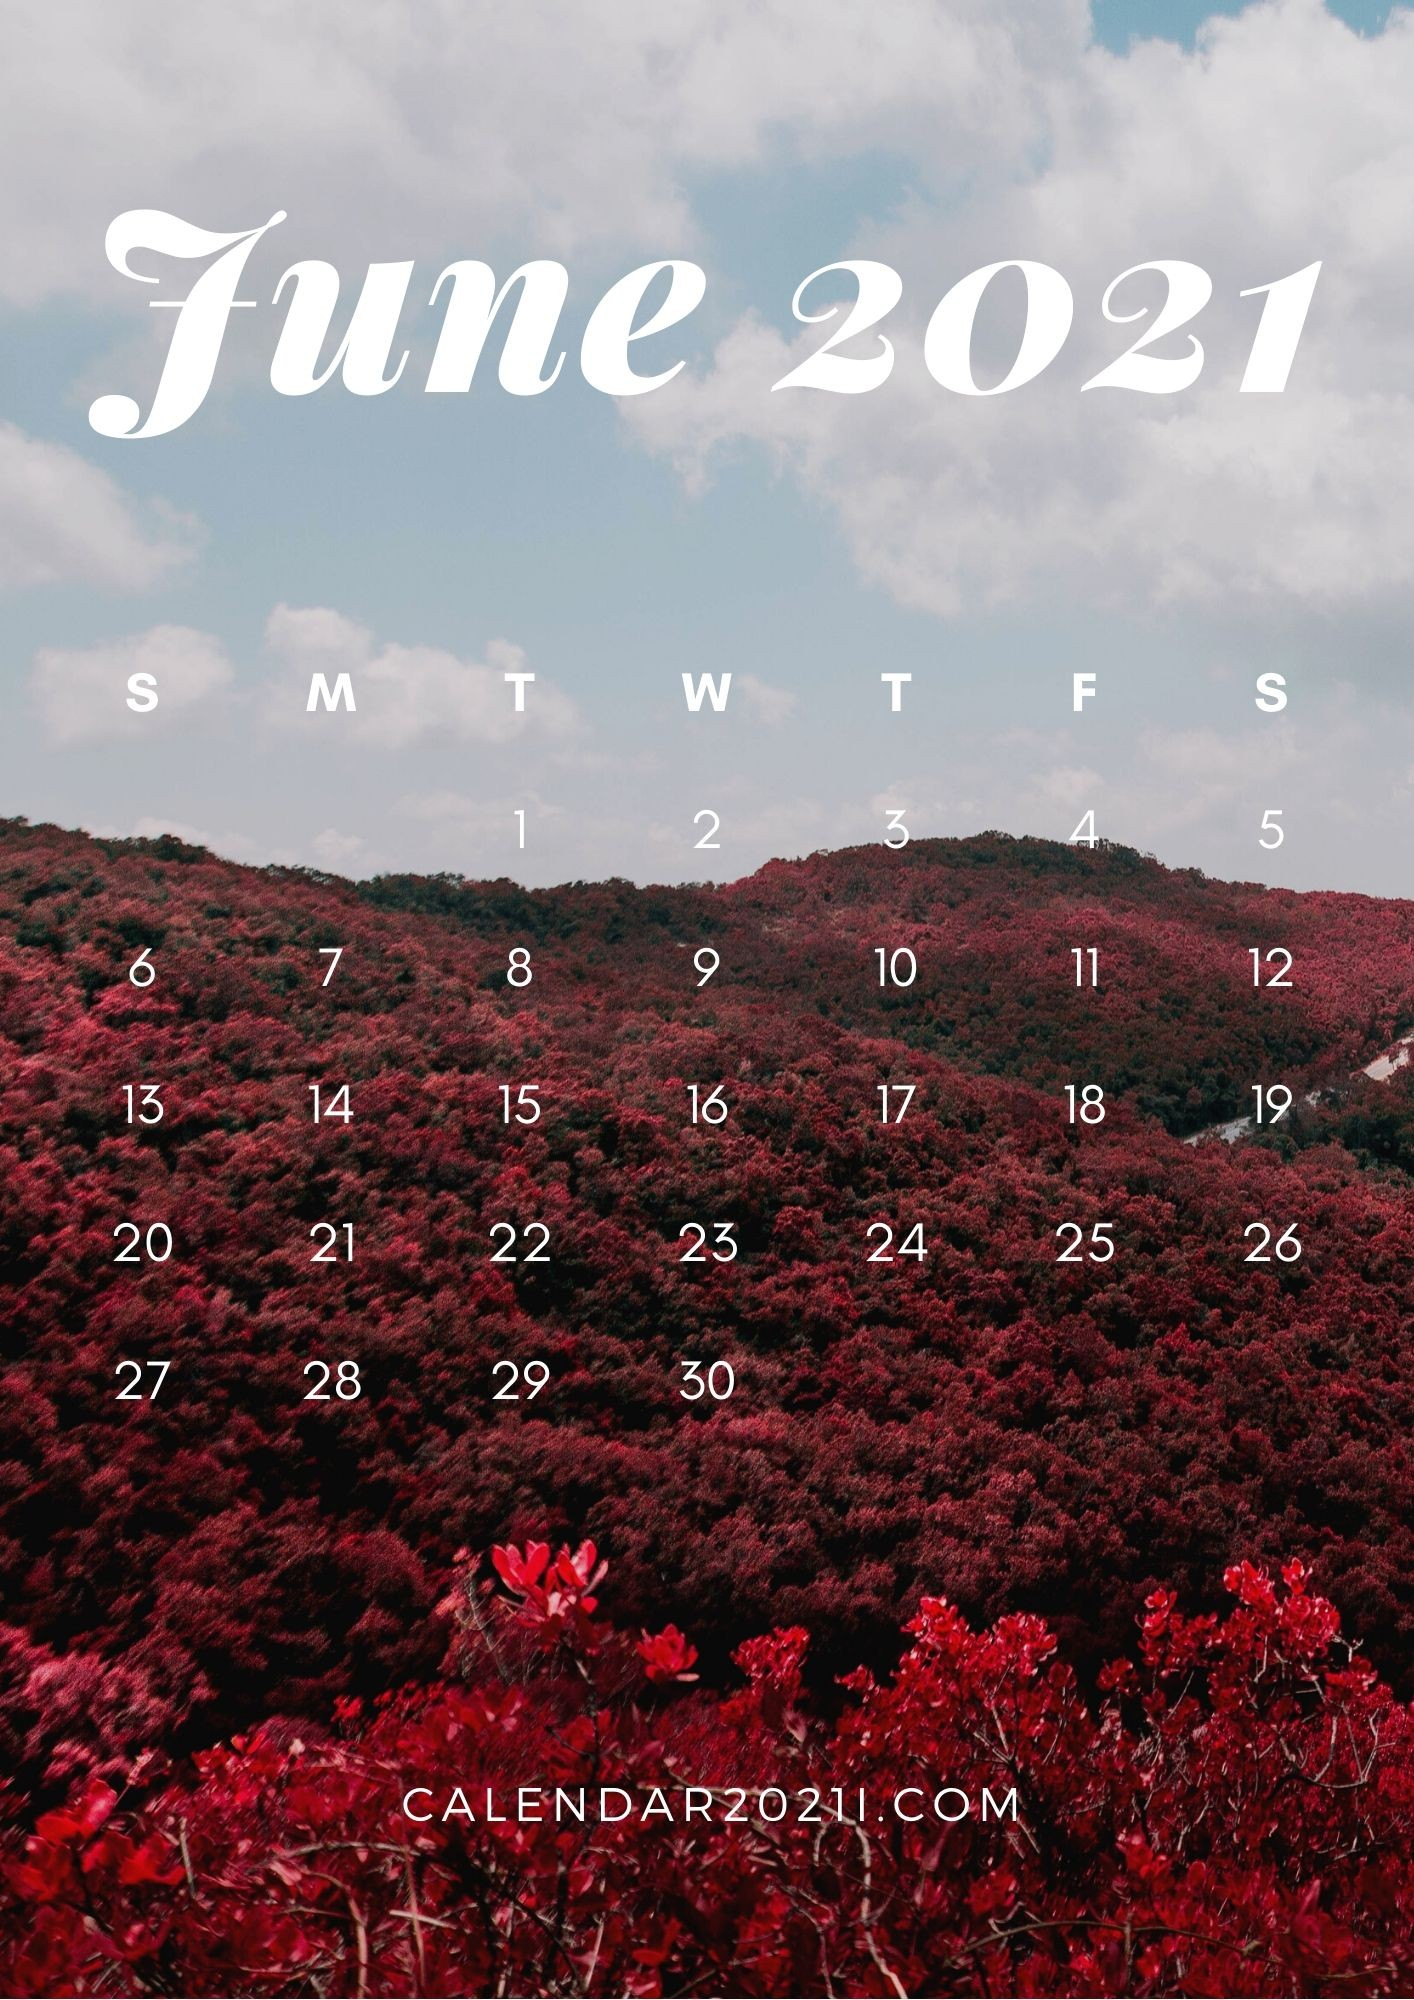 June 2021 Desktop Calendar Wallpaper Calendar 2021